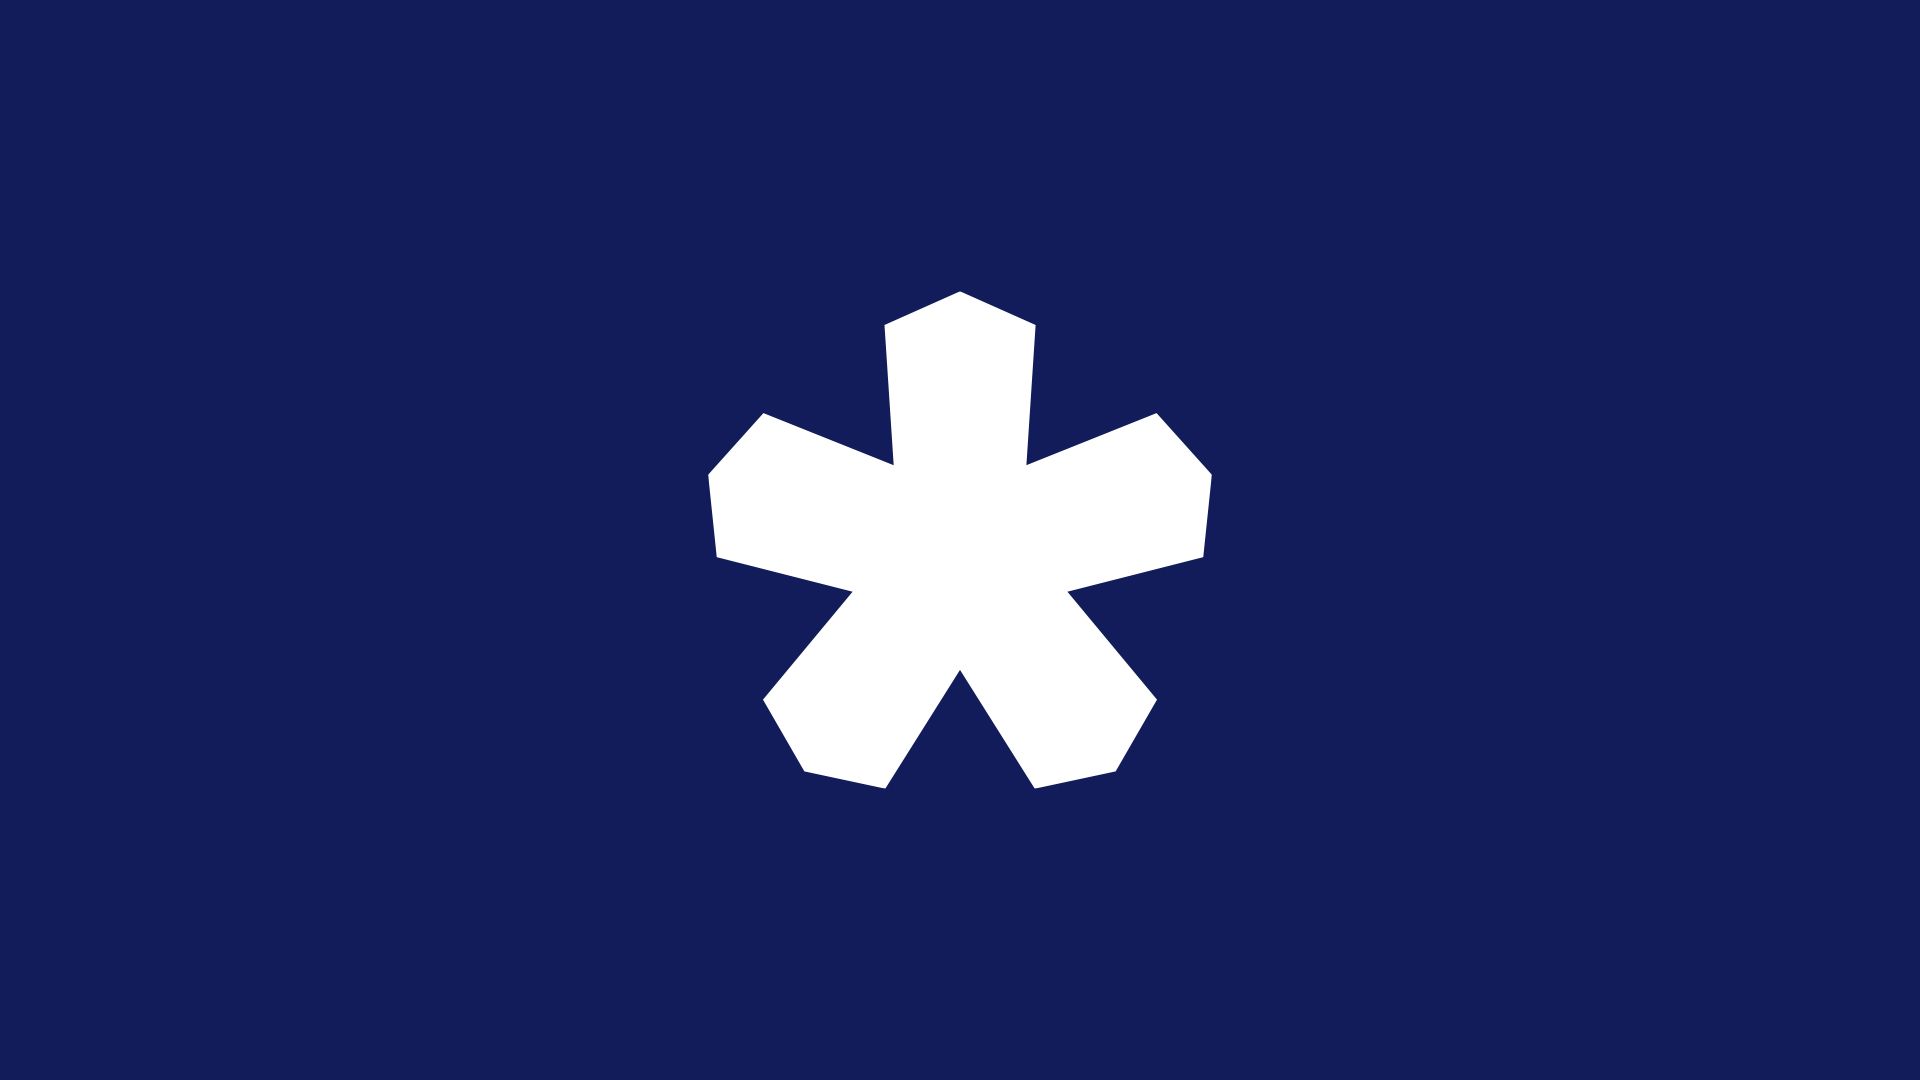 logo bofrost